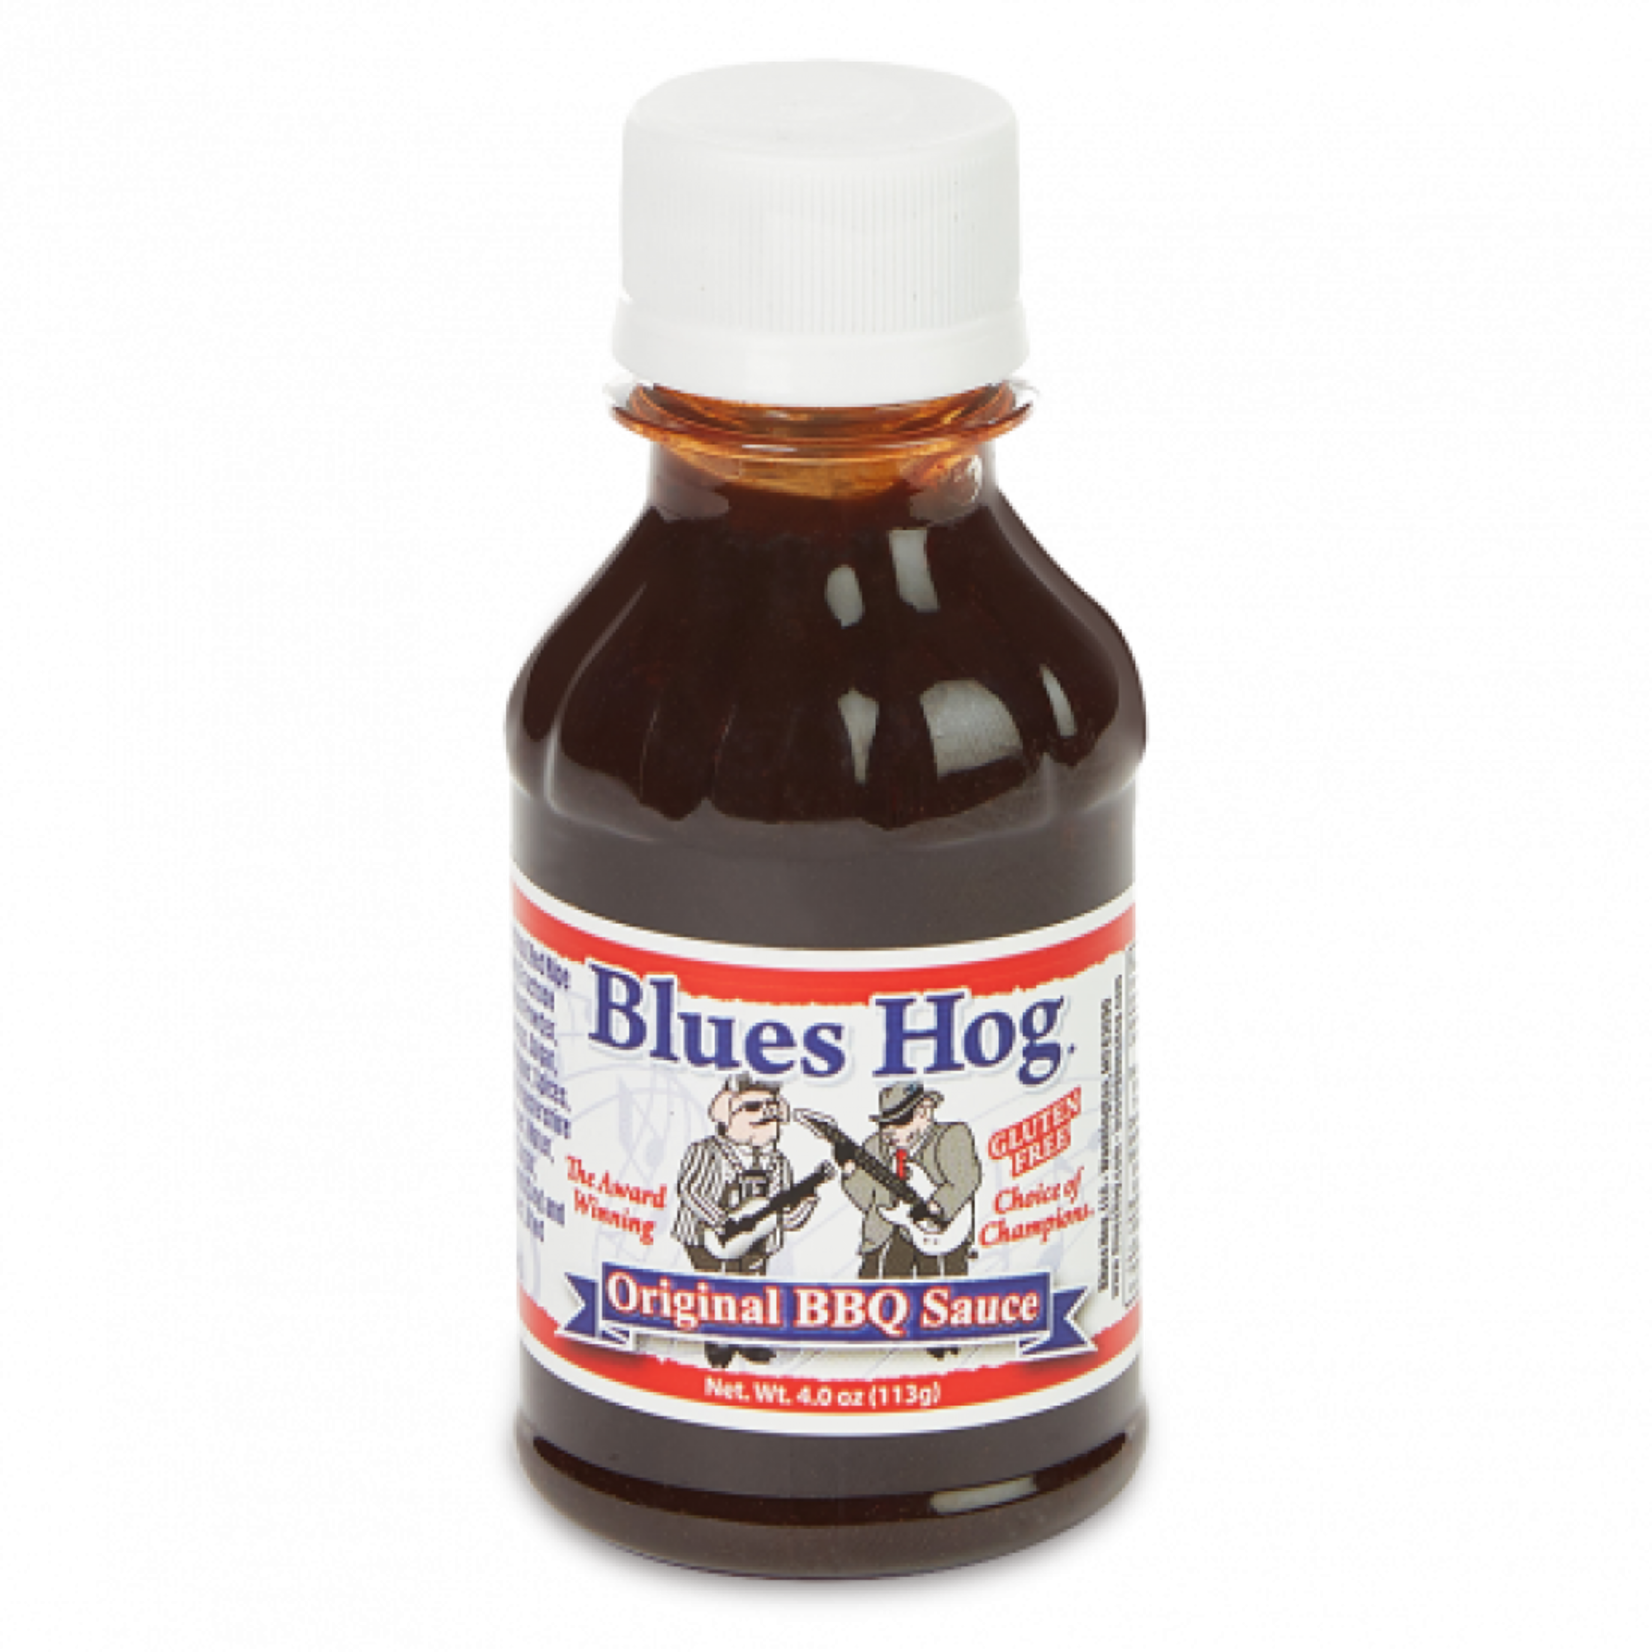 Blues Hog Original BBQ sauce 4 oz